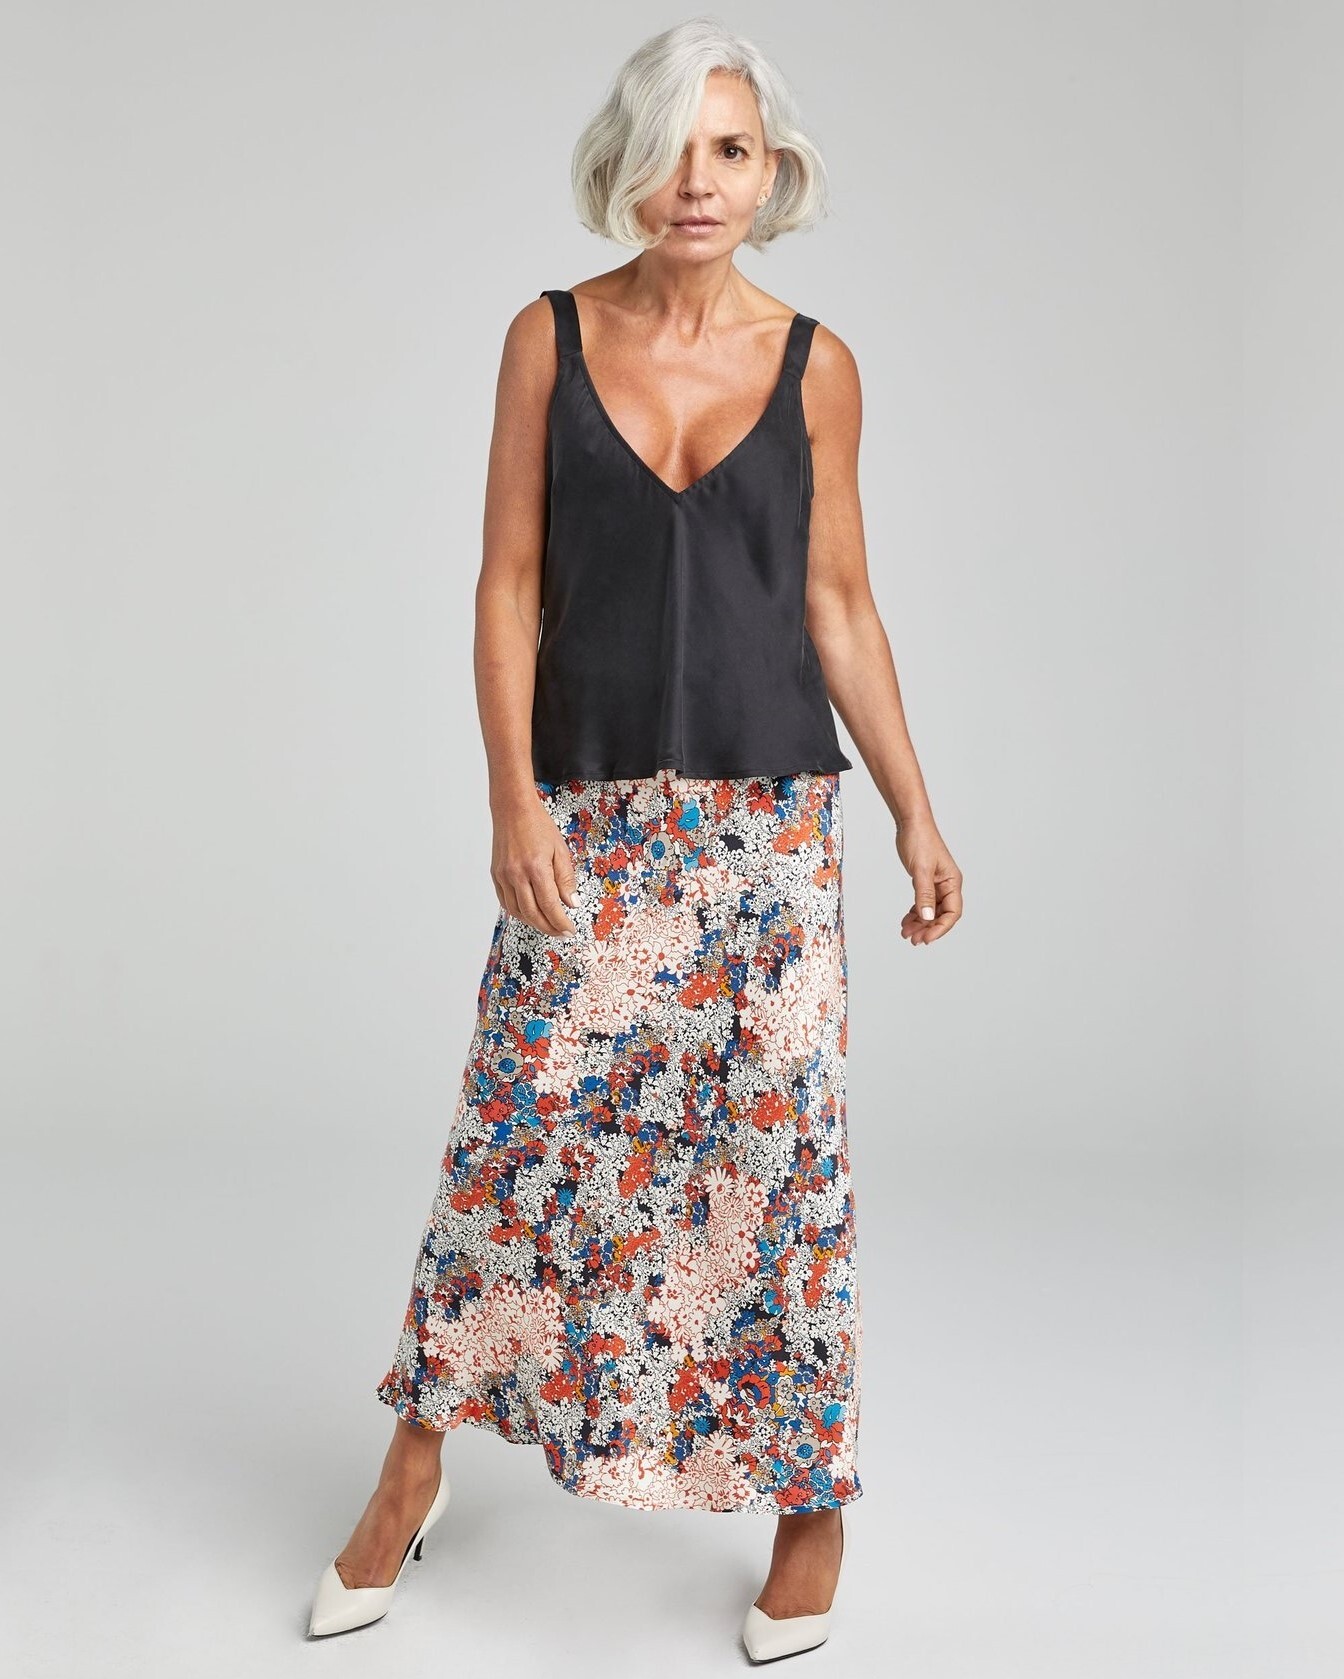 Introducing the Evie Bias Skirt Pattern  Sew Tessuti Blog